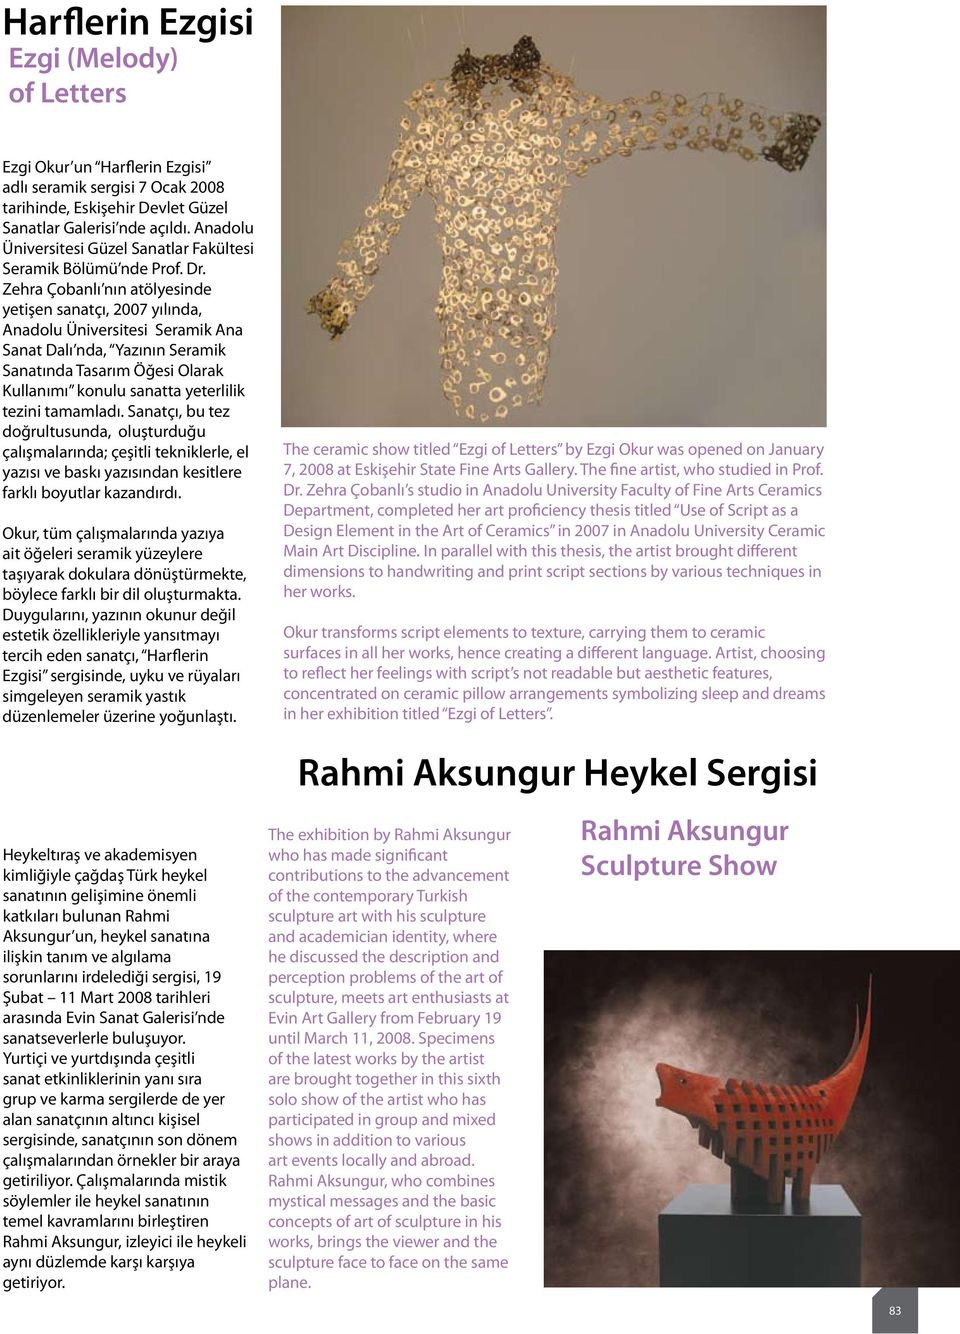 Zehra Çobanlı nın atölyesinde yetişen sanatçı, 2007 yılında, Anadolu Üniversitesi Seramik Ana Sanat Dalı nda, Yazının Seramik Sanatında Tasarım Öğesi Olarak Kullanımı konulu sanatta yeterlilik tezini